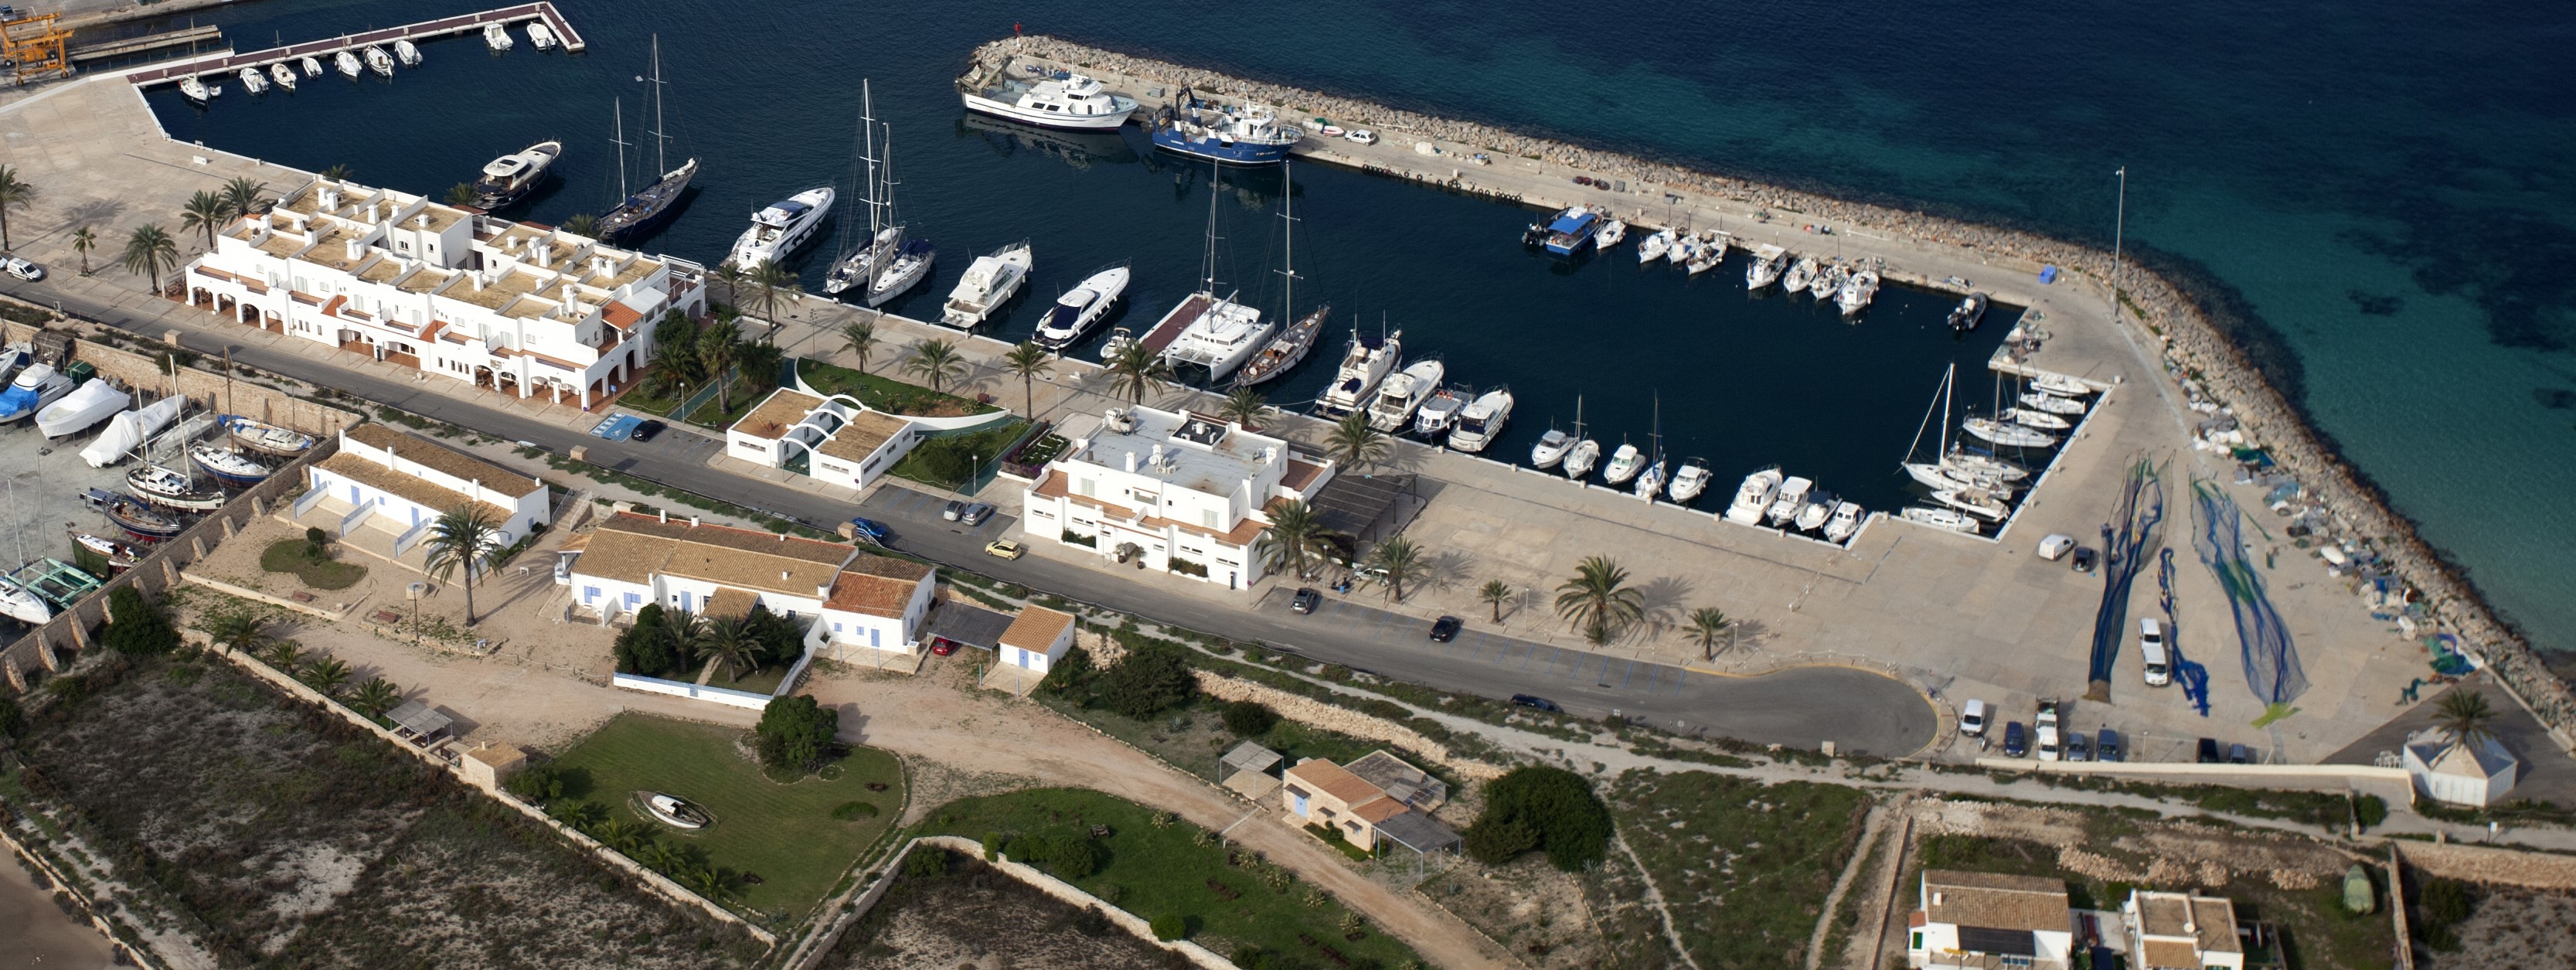 Die APB genehmigt die Regeln der öffentlichen Ausschreibung für die Verwaltung der Liegeplätze des Anlegeplatzes für kleine Boote im Hafen von La Savina